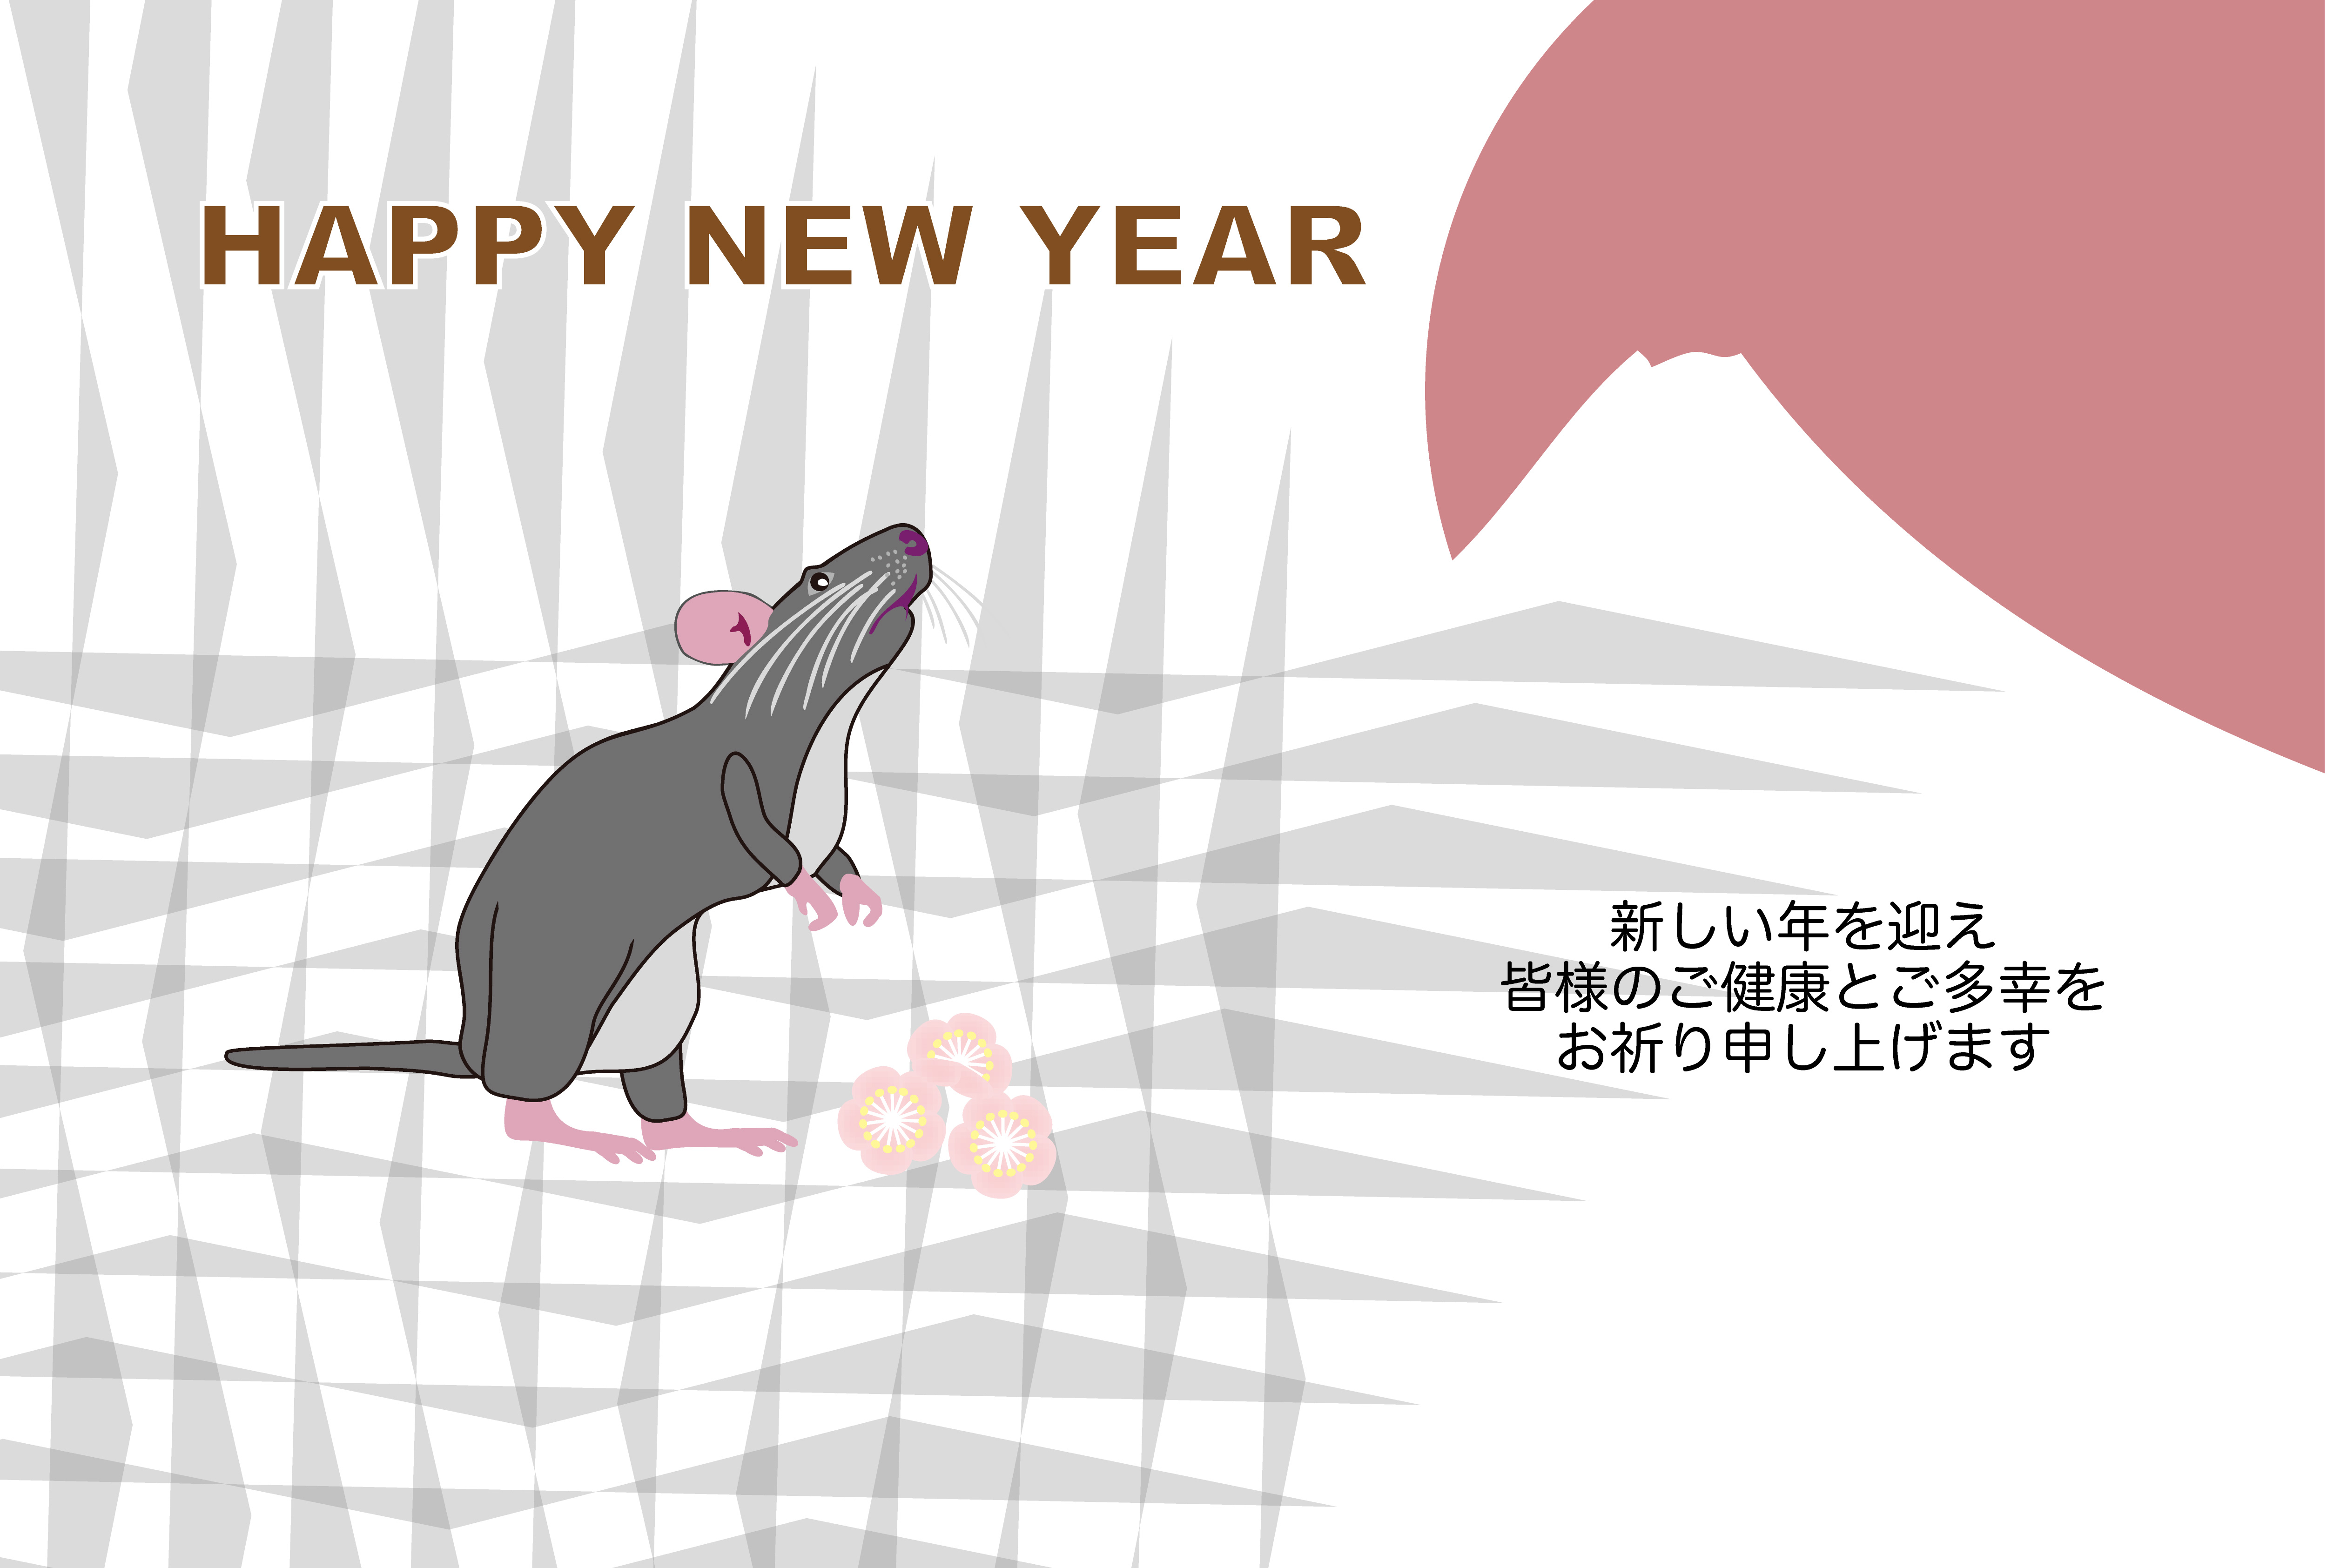 2020子年の鼠のイラスト年賀状素材